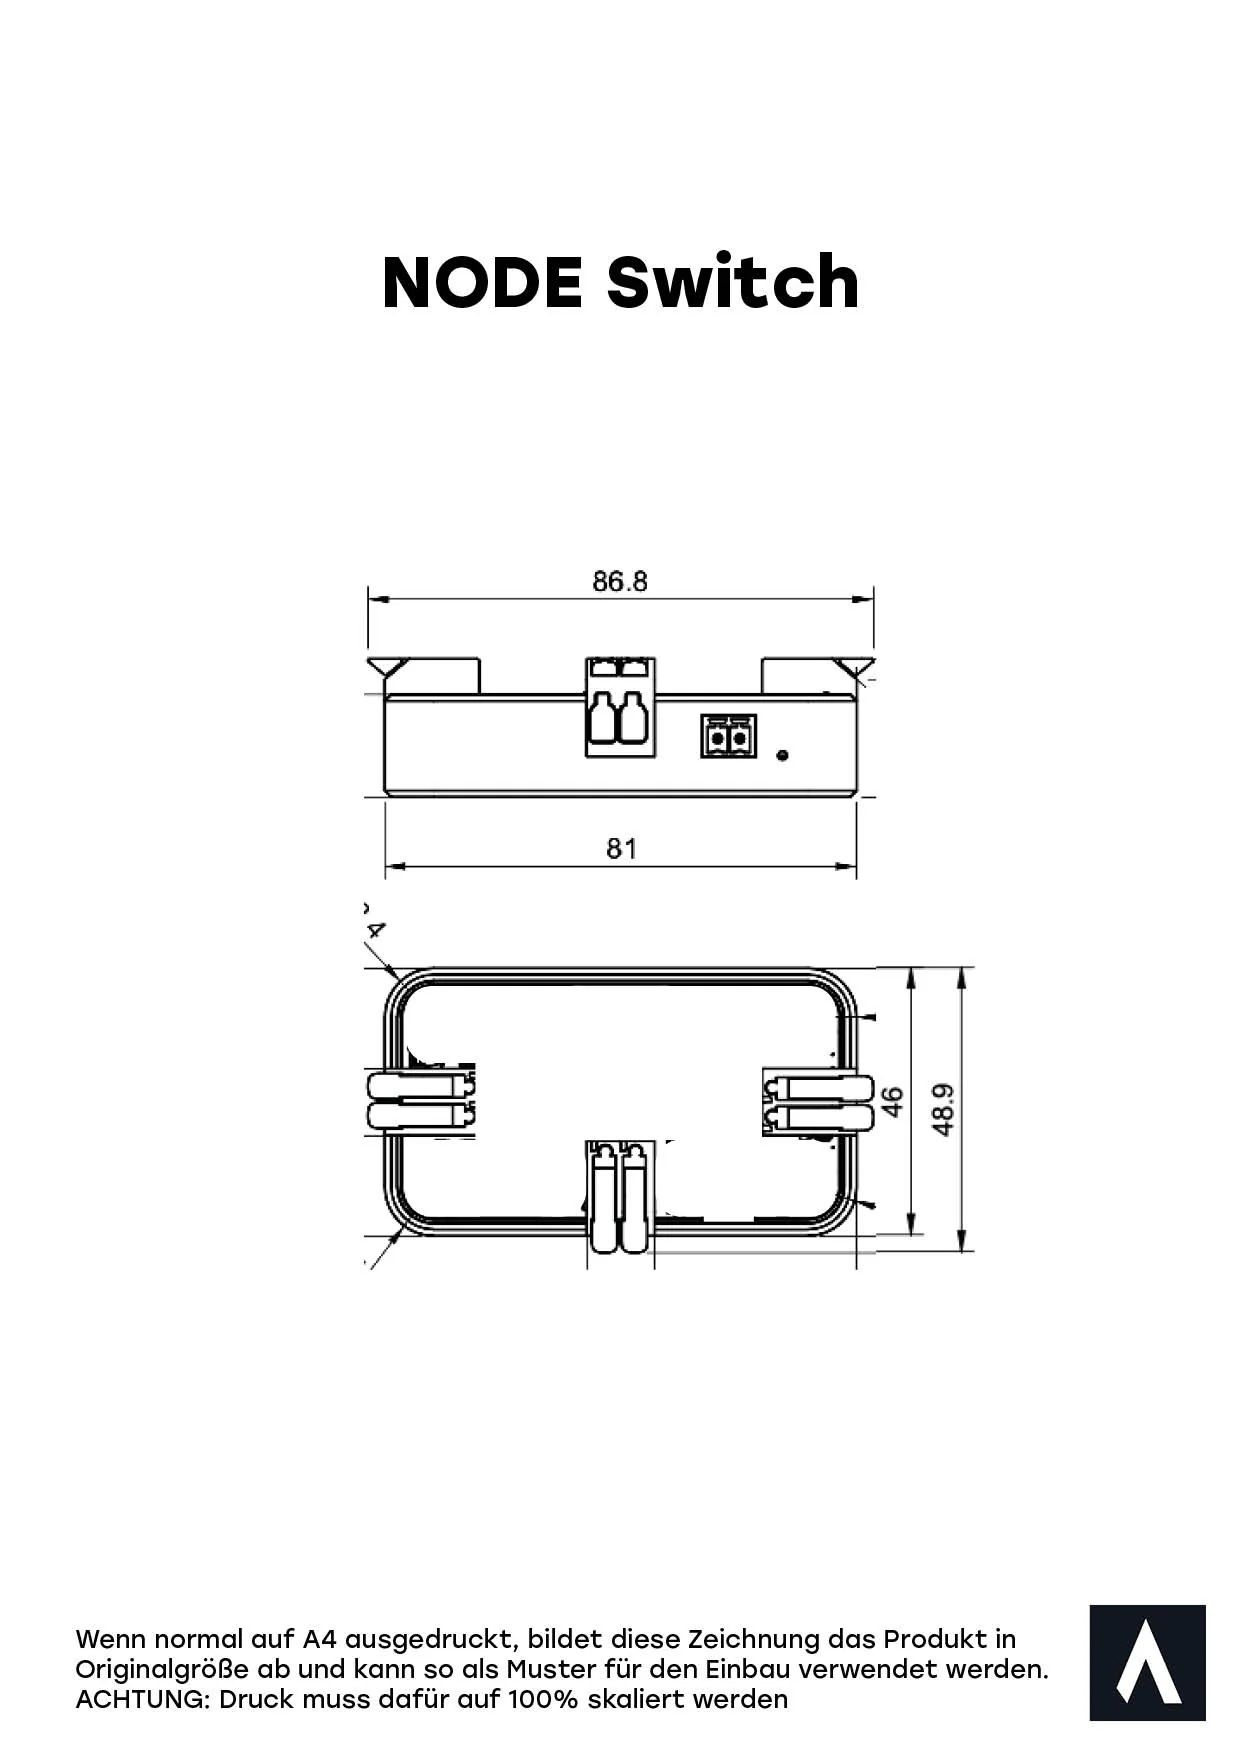 REVOTION Smarthome fuer Camper NODE-Switch - Digitaler Schalter und Sicherung NODE Switch